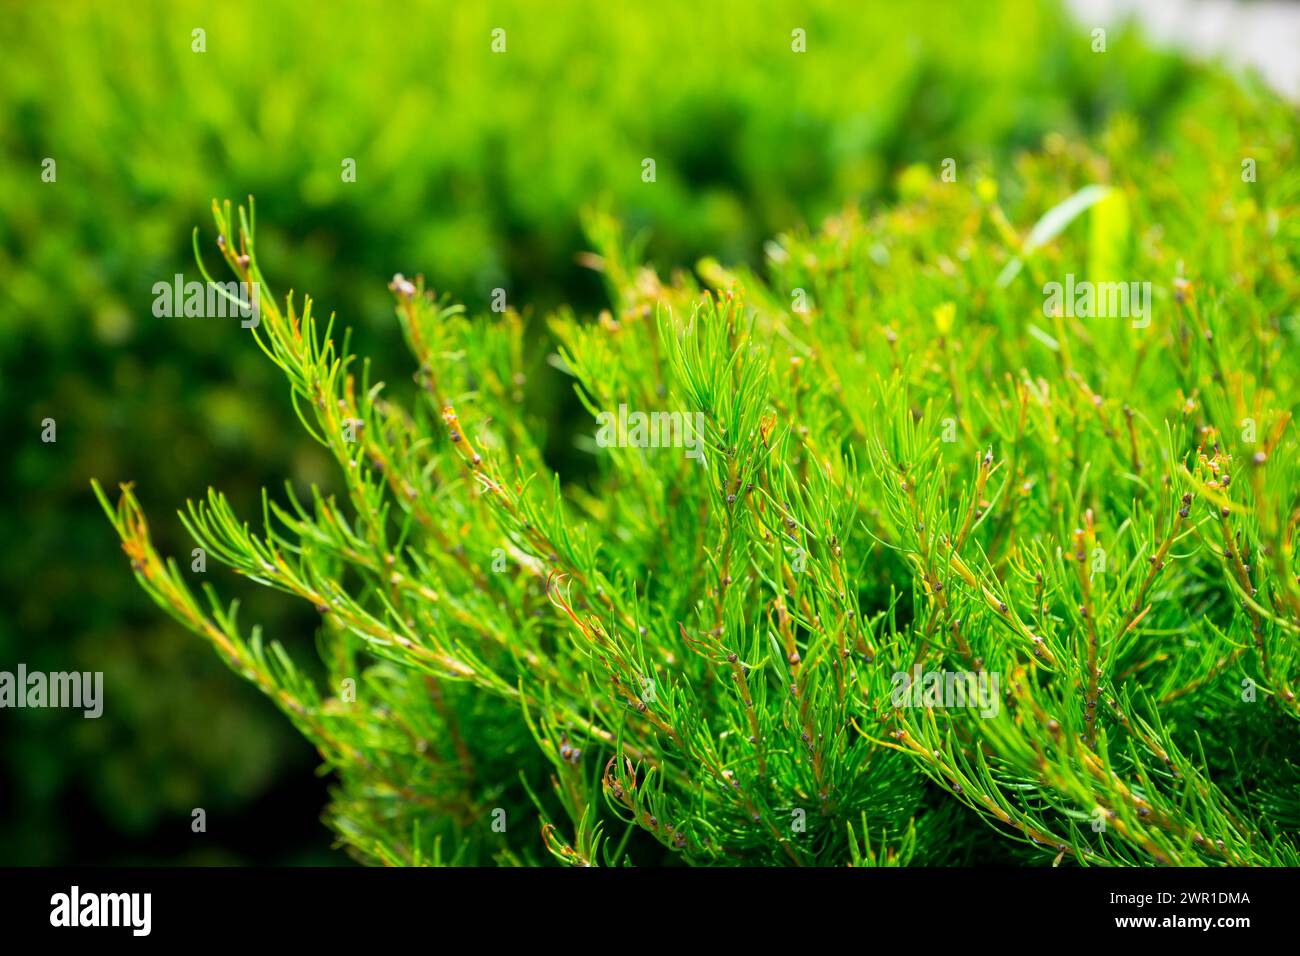 Green thuja bush in the garden. Selective focus. Stock Photo